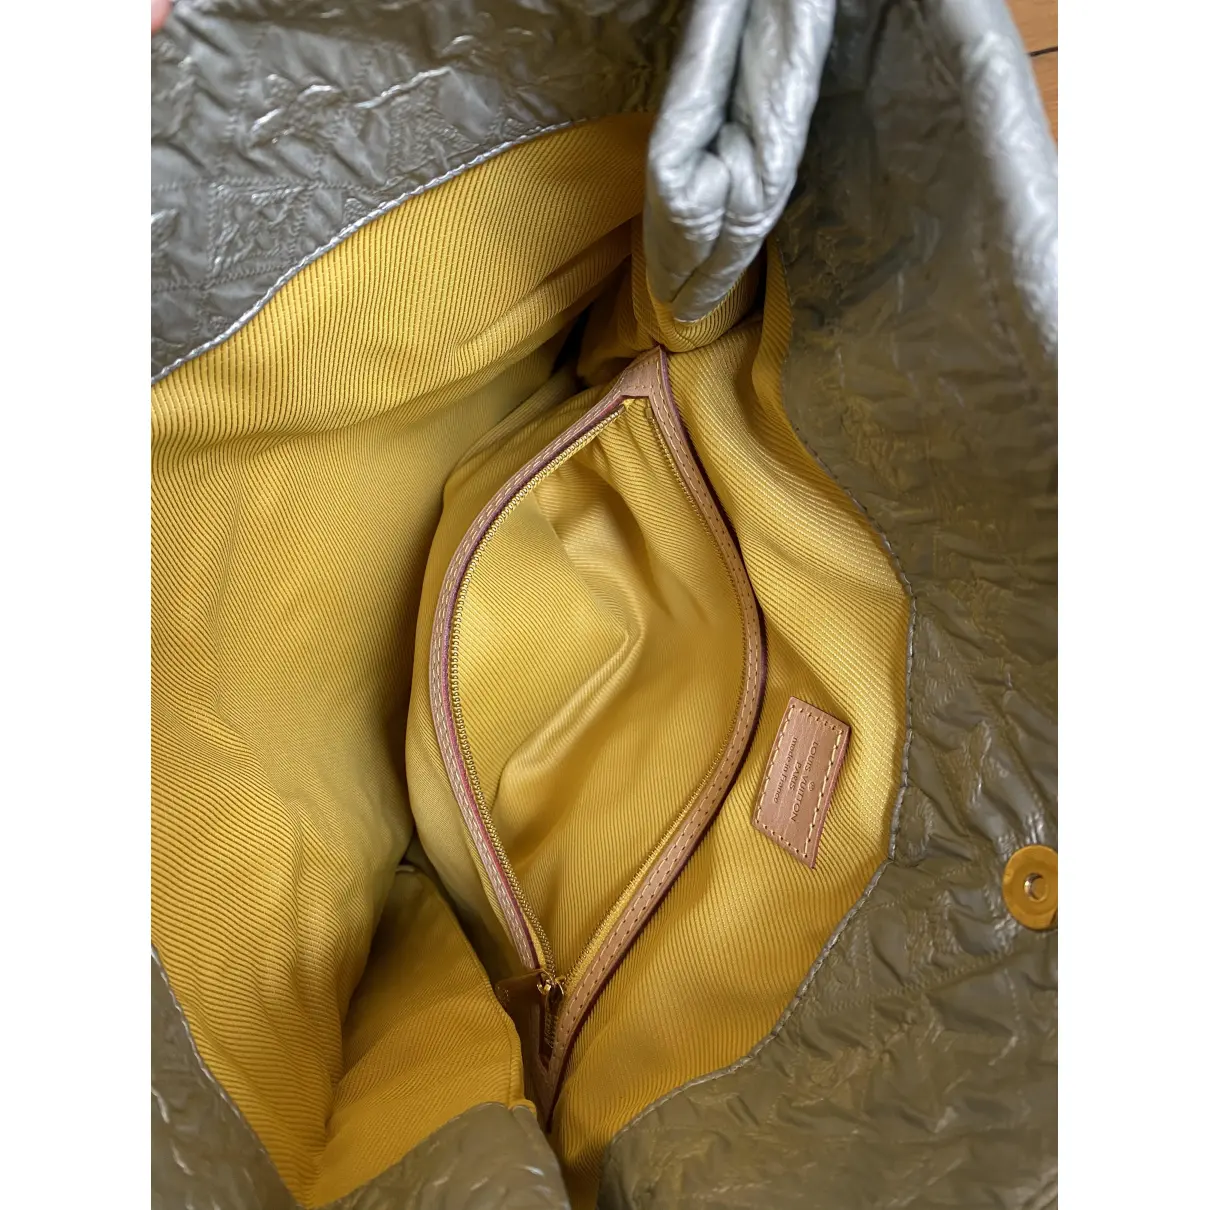 Limelight cloth clutch bag Louis Vuitton